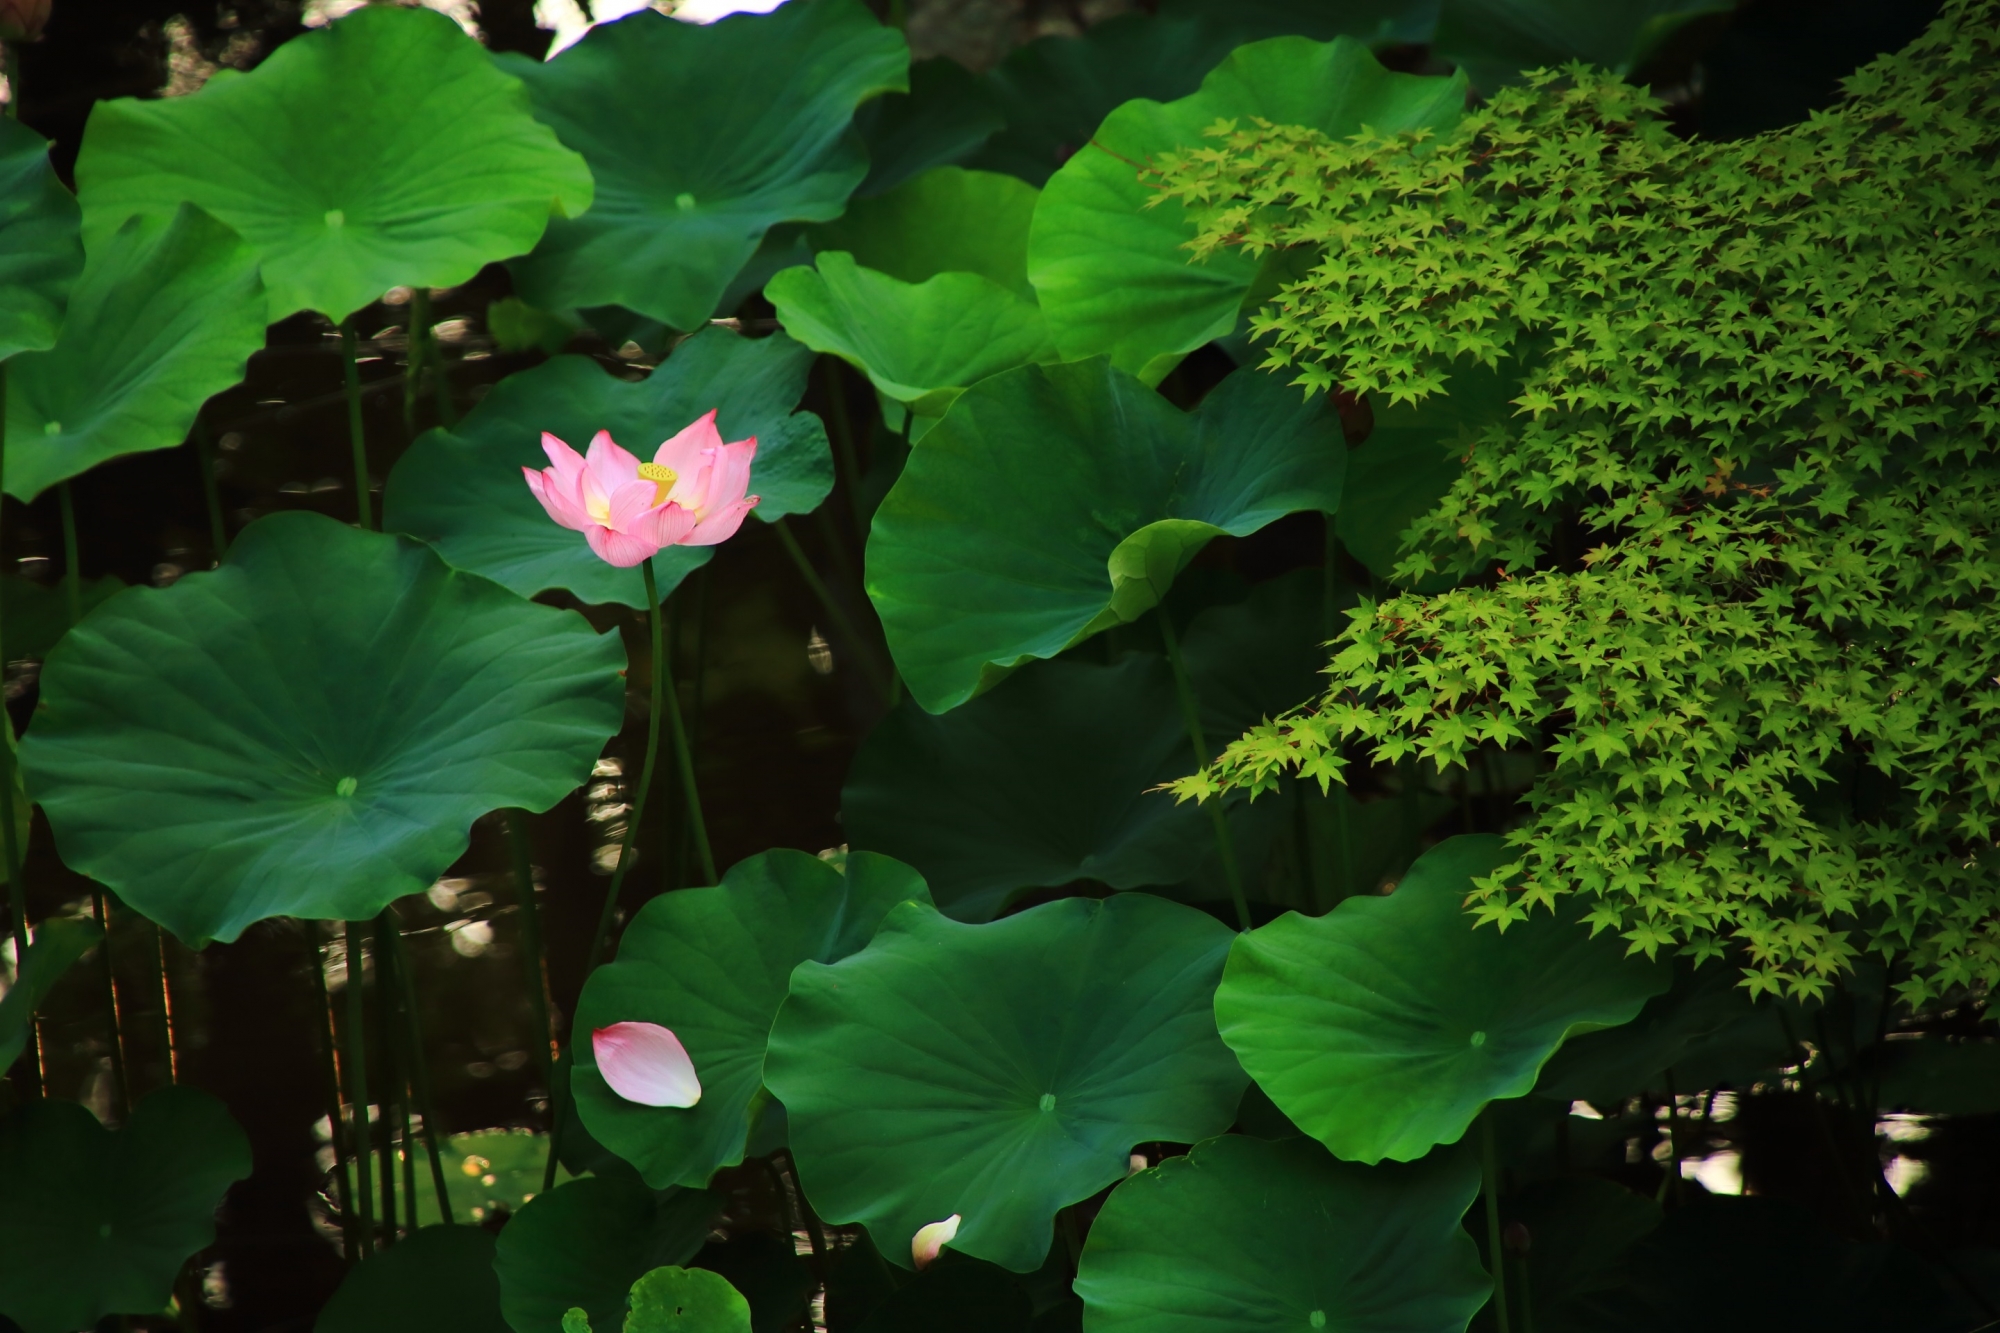 大谷本廟の池の青もみじと蓮の花と趣きある散った花びら